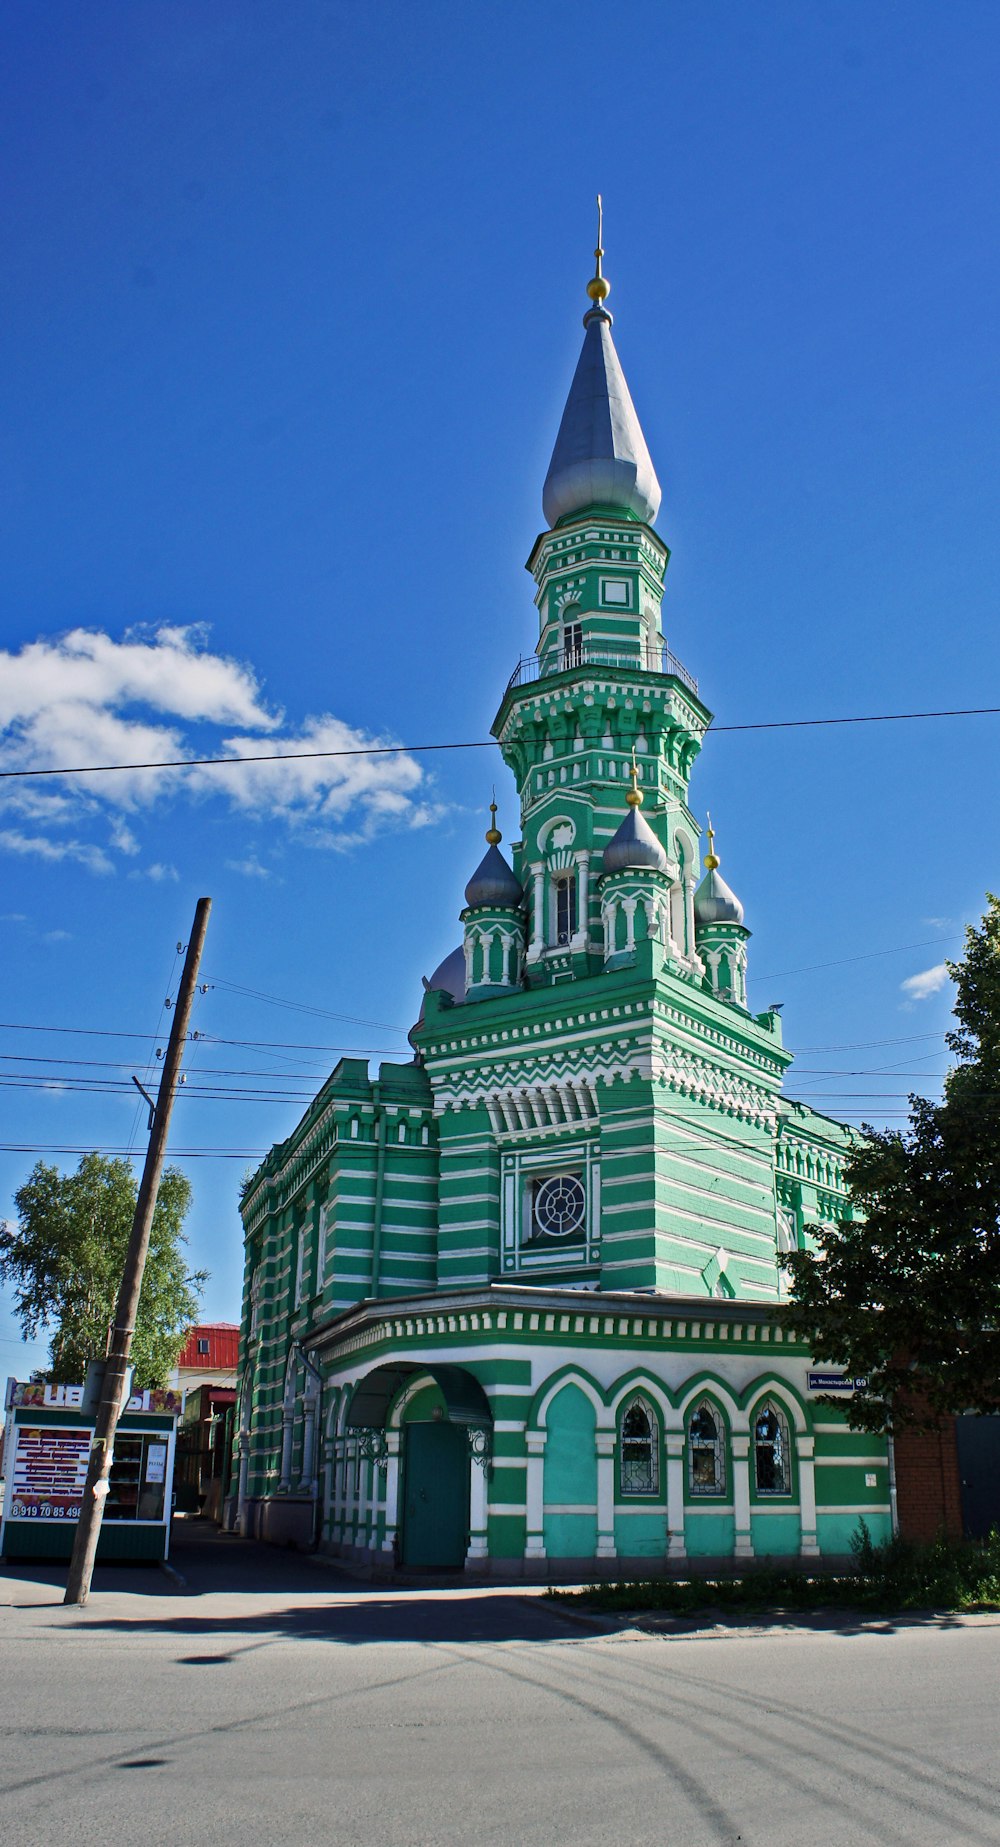 時計が描かれた緑と白の建物